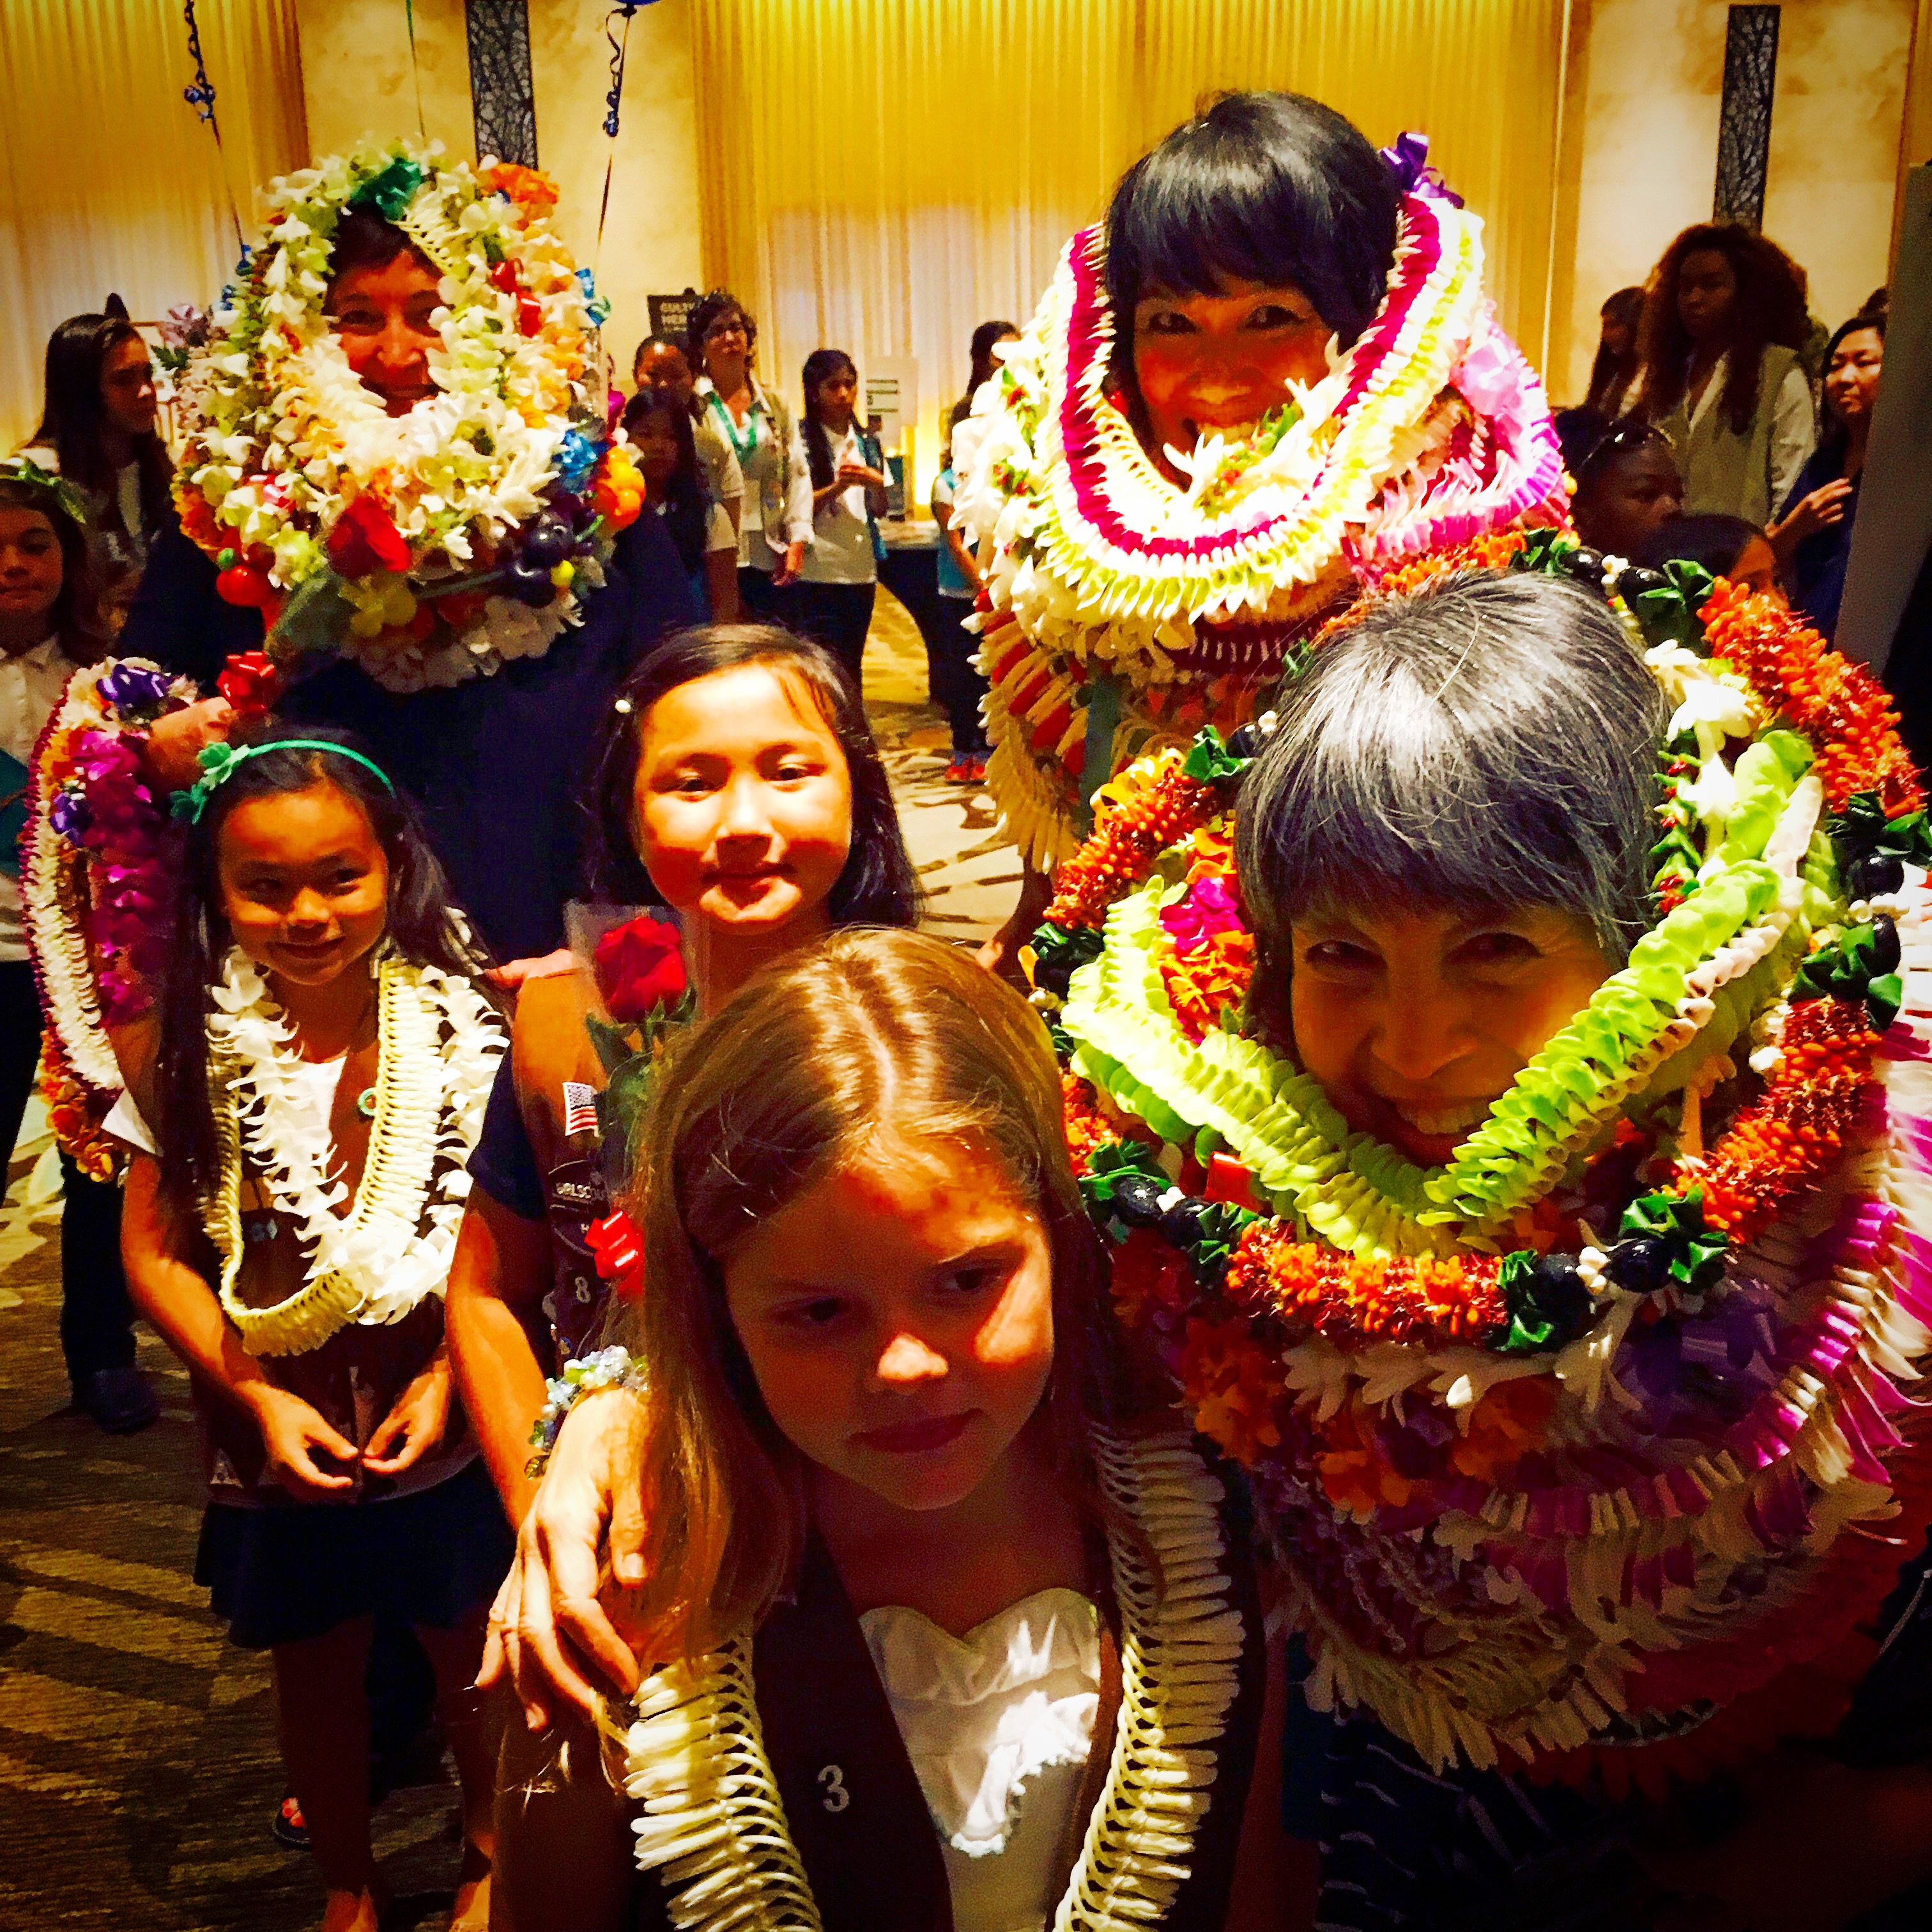 Congrats to Outstanding Women in Hawaii!